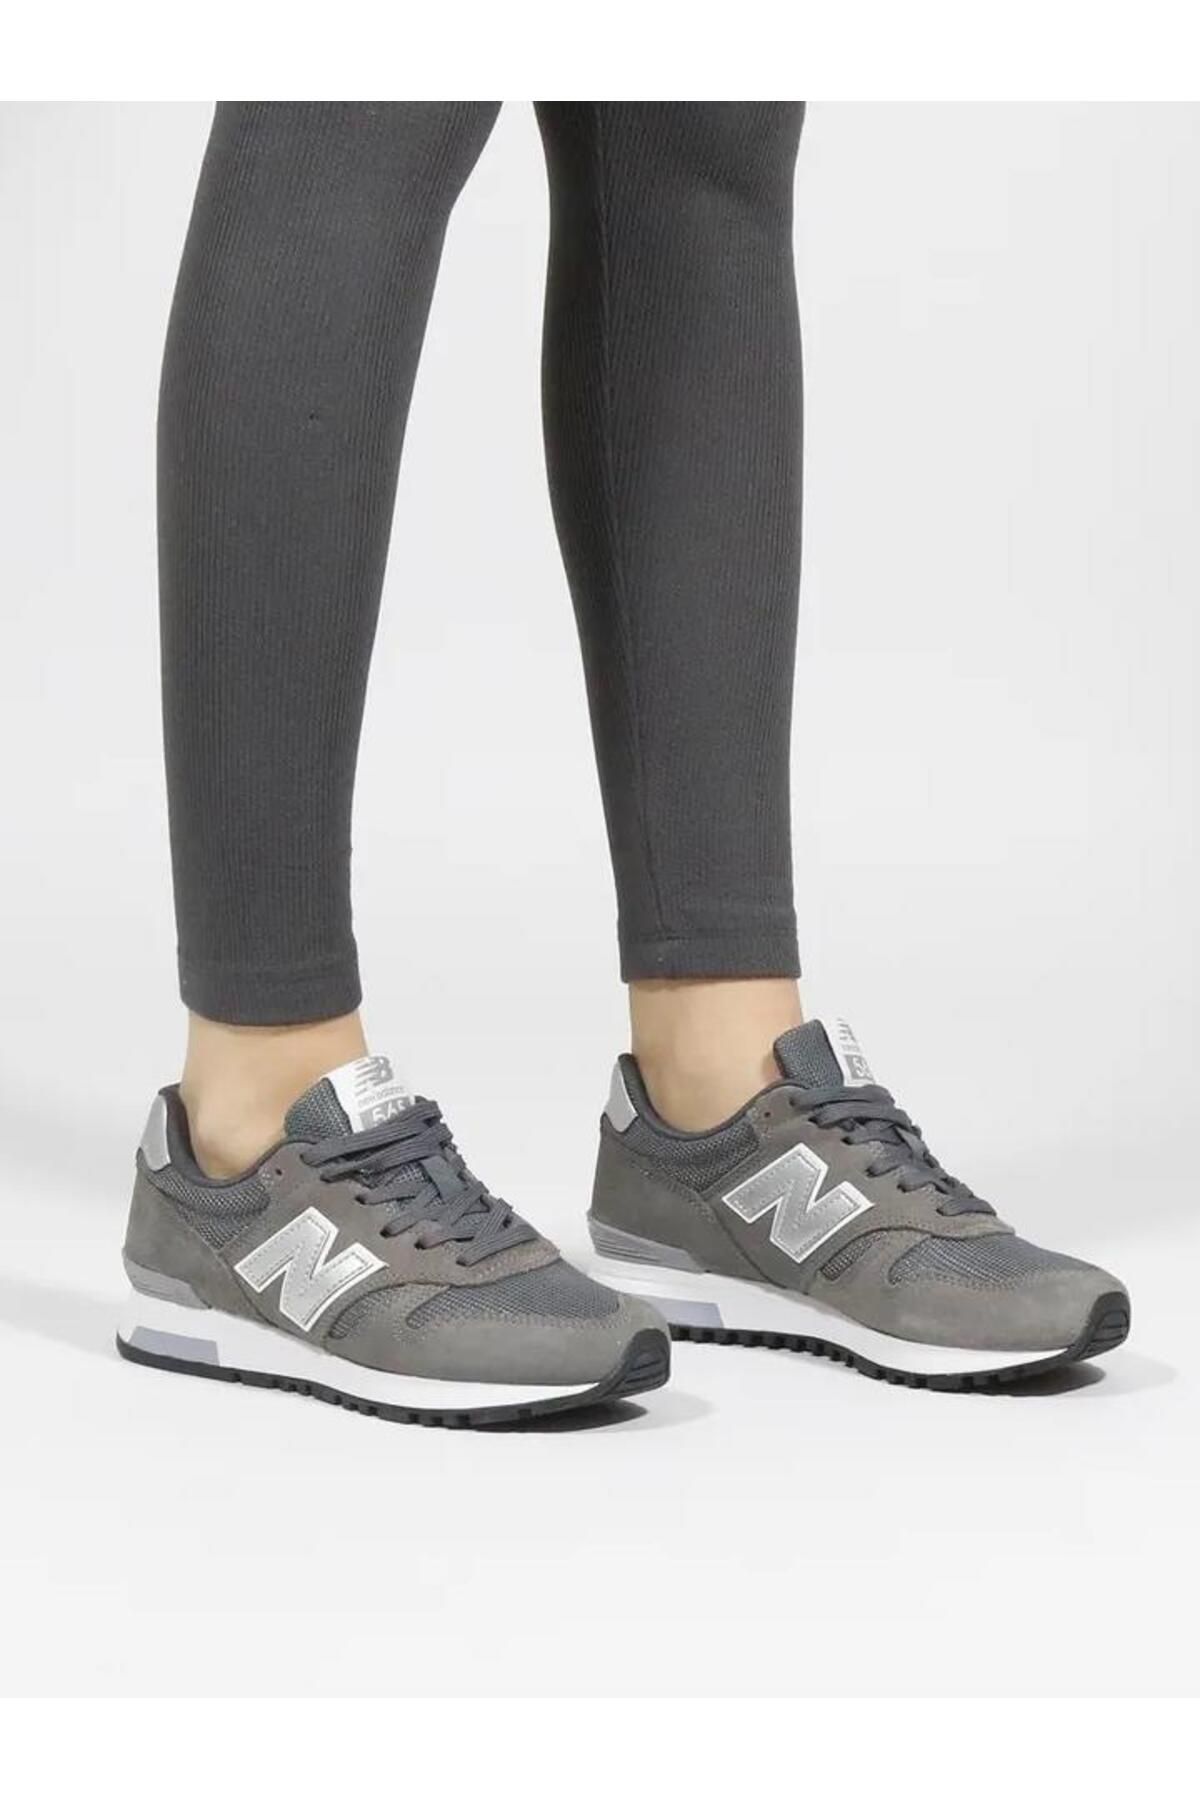 New Balance Antrasit Kadın Sneaker Günlük Spor Ayakkabı